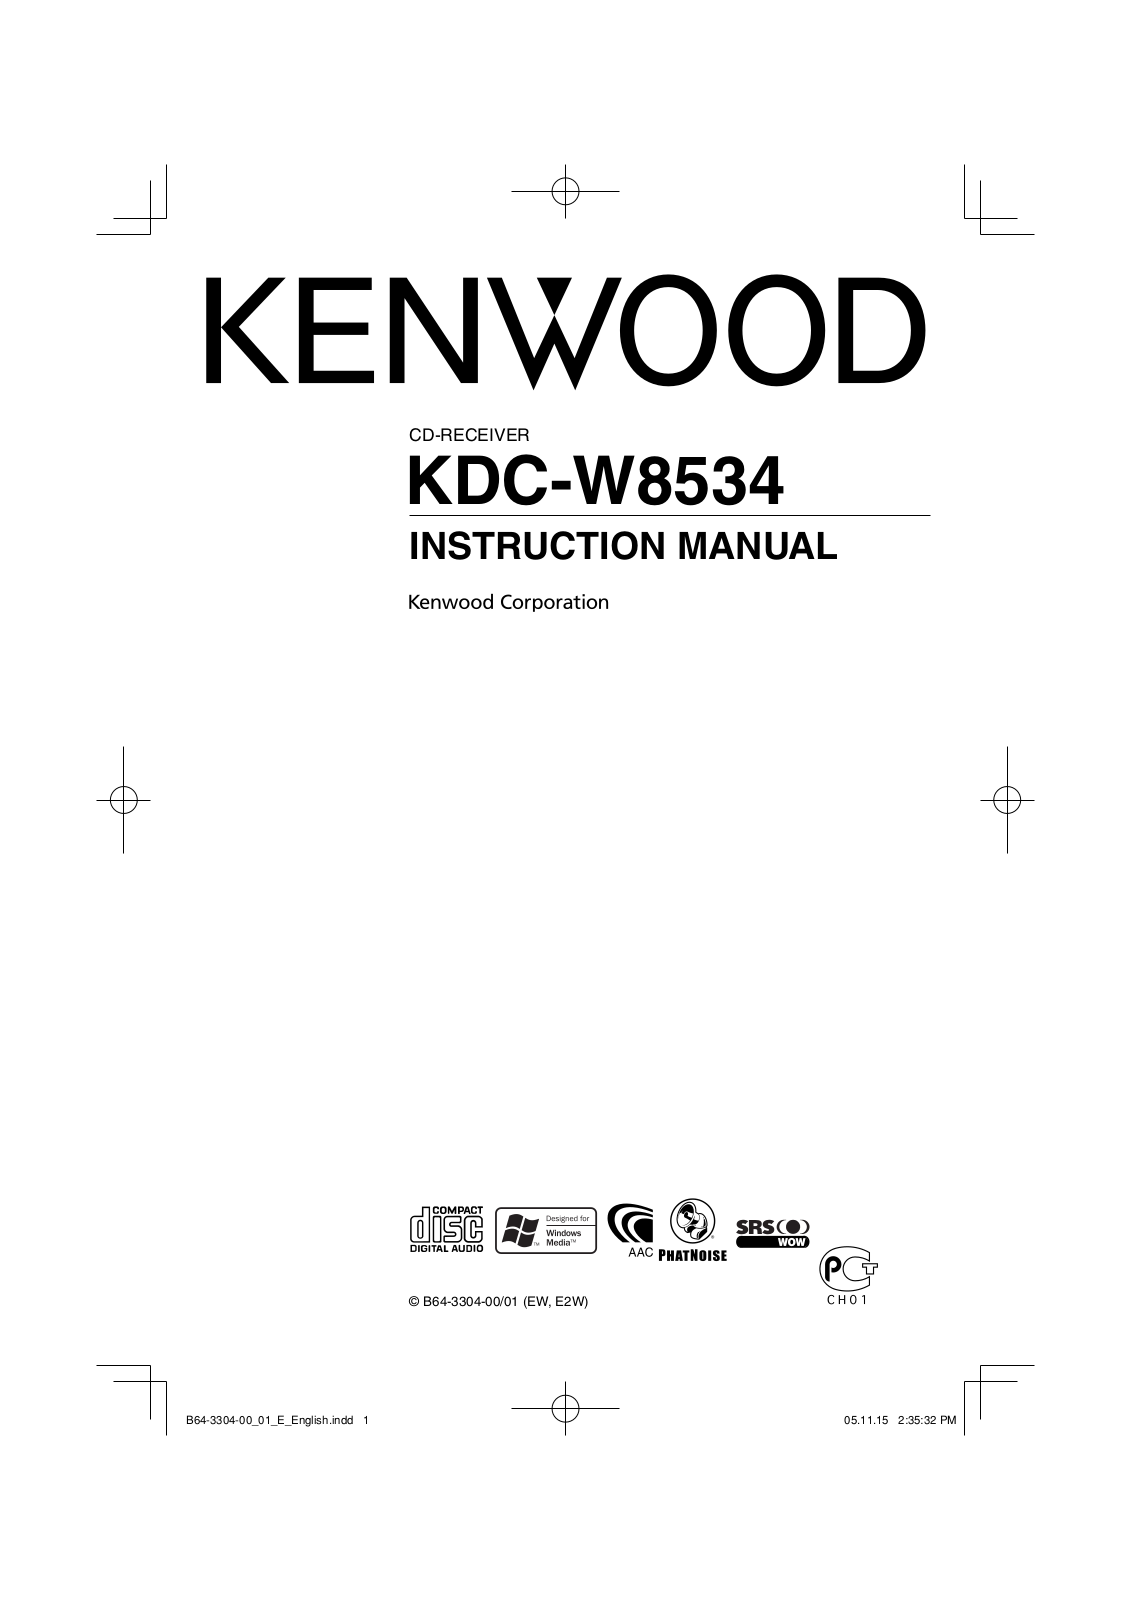 Kenwood KDC-W8534 User Manual